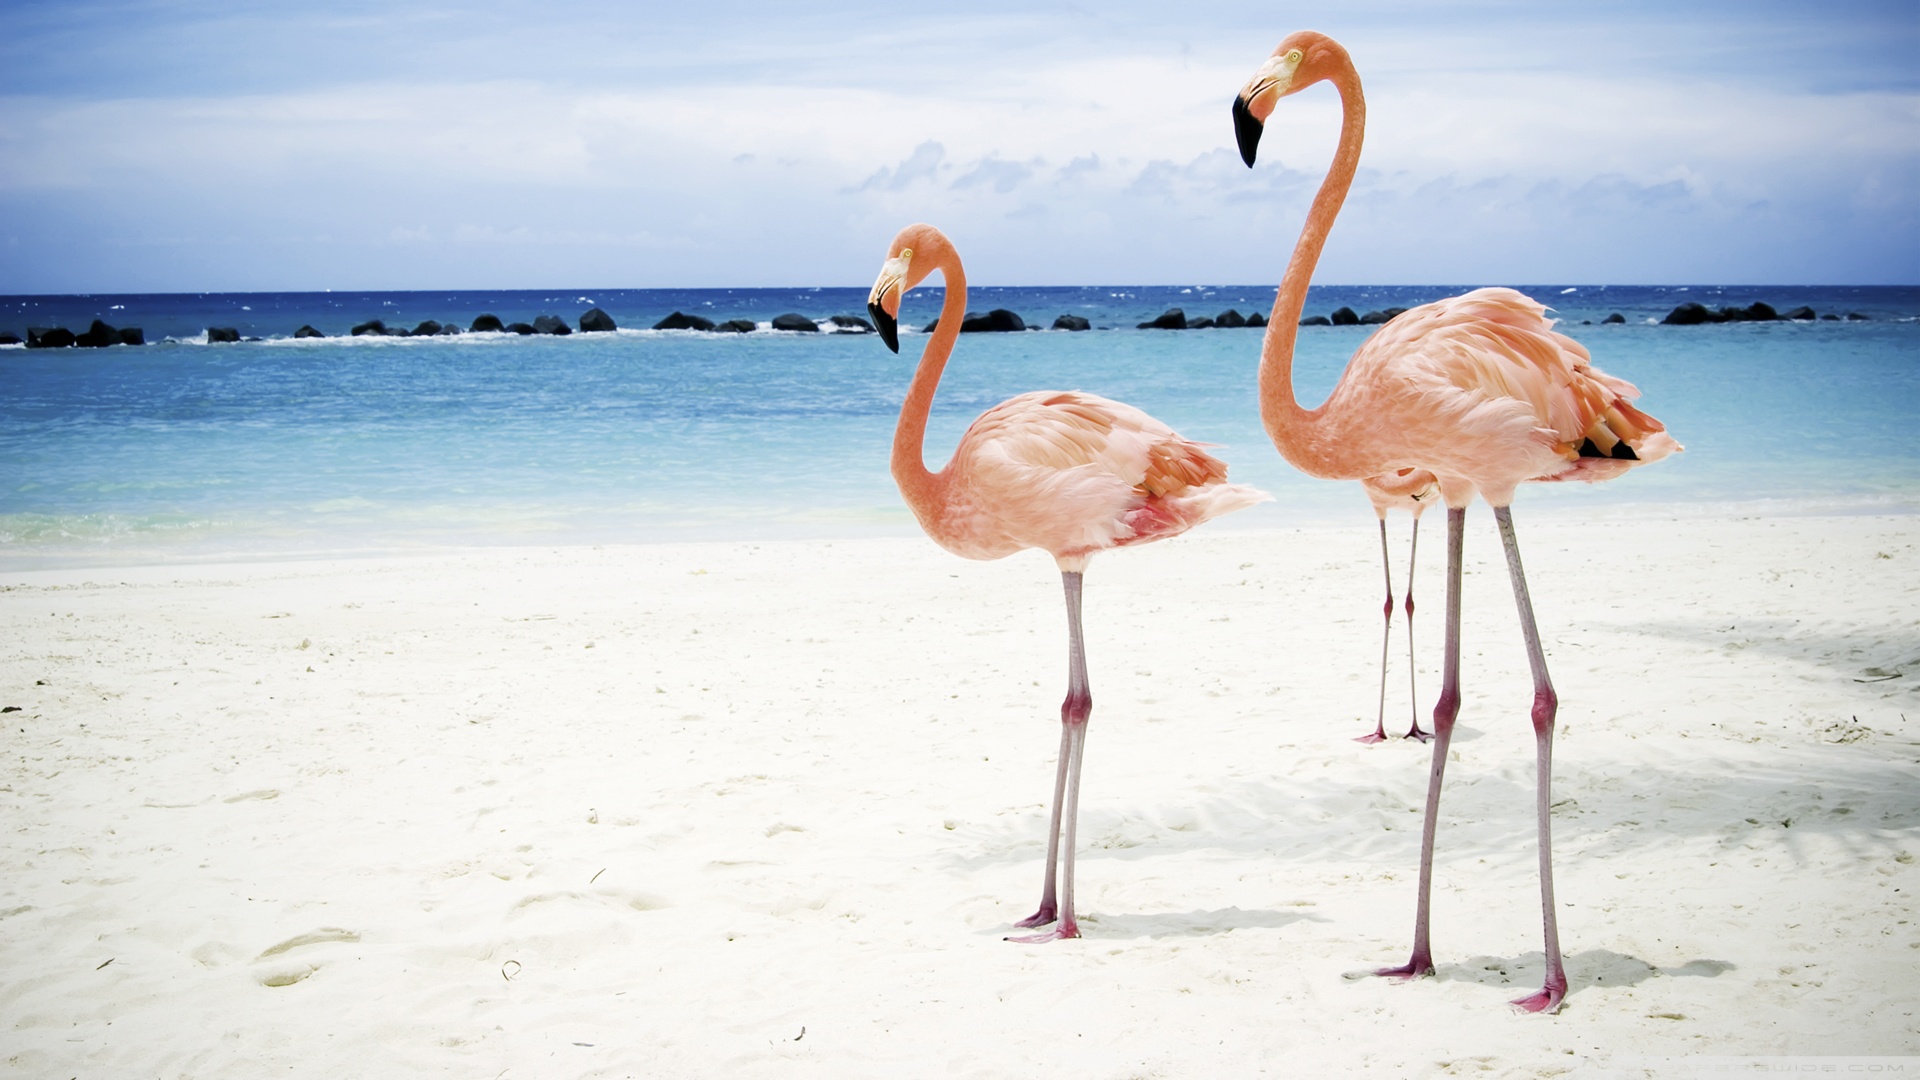 Vendicari Flamingos , HD Wallpaper & Backgrounds